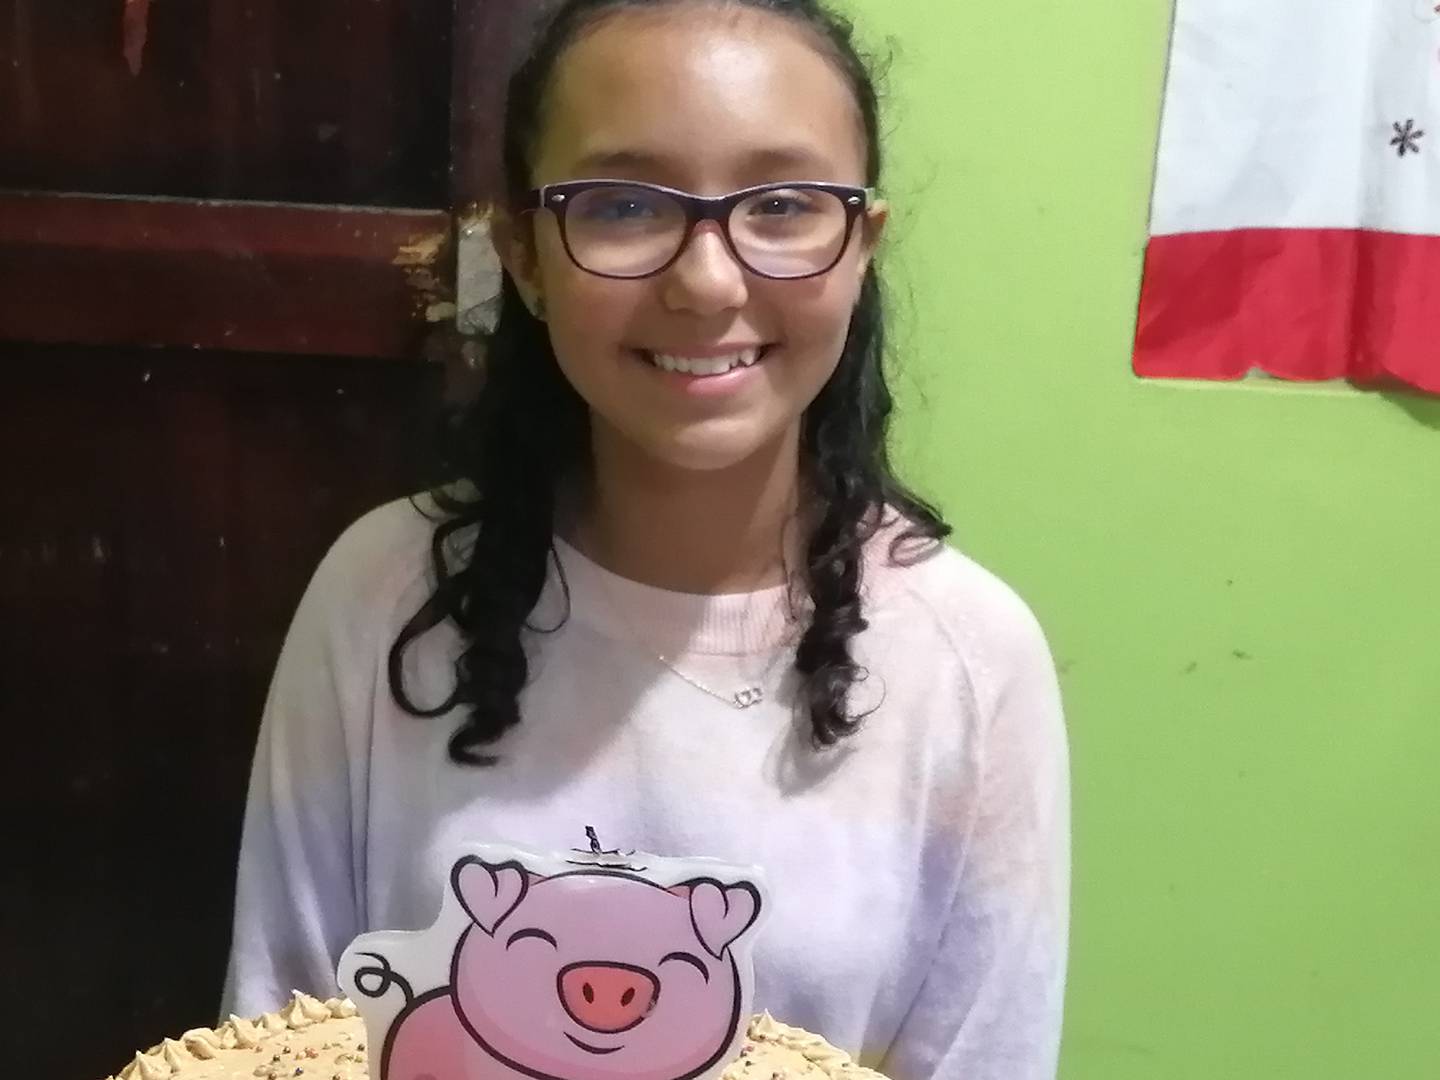 Bianka Cerdas Alvarado cumplió 13 años y va para segundo año de colegios. Es una adolescente sana, aunque nació a las 26 semanas de gestación. Foto: Keyna Calderón